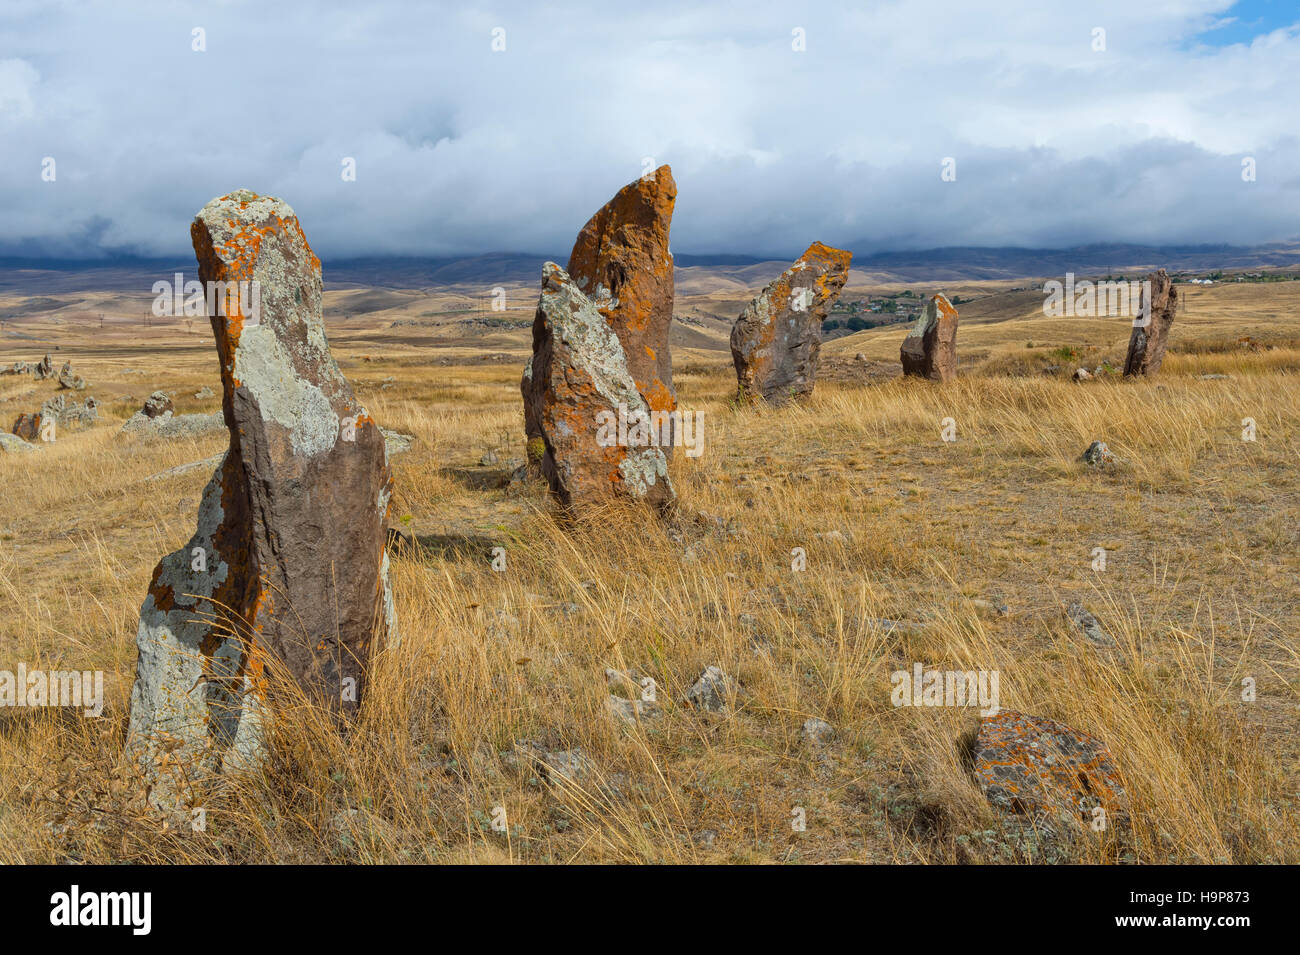 Site archéologiques préhistoriques de Zorats Karer, Sisian, province de Syunik, Arménie, Caucase, Moyen-Orient, Asie Banque D'Images